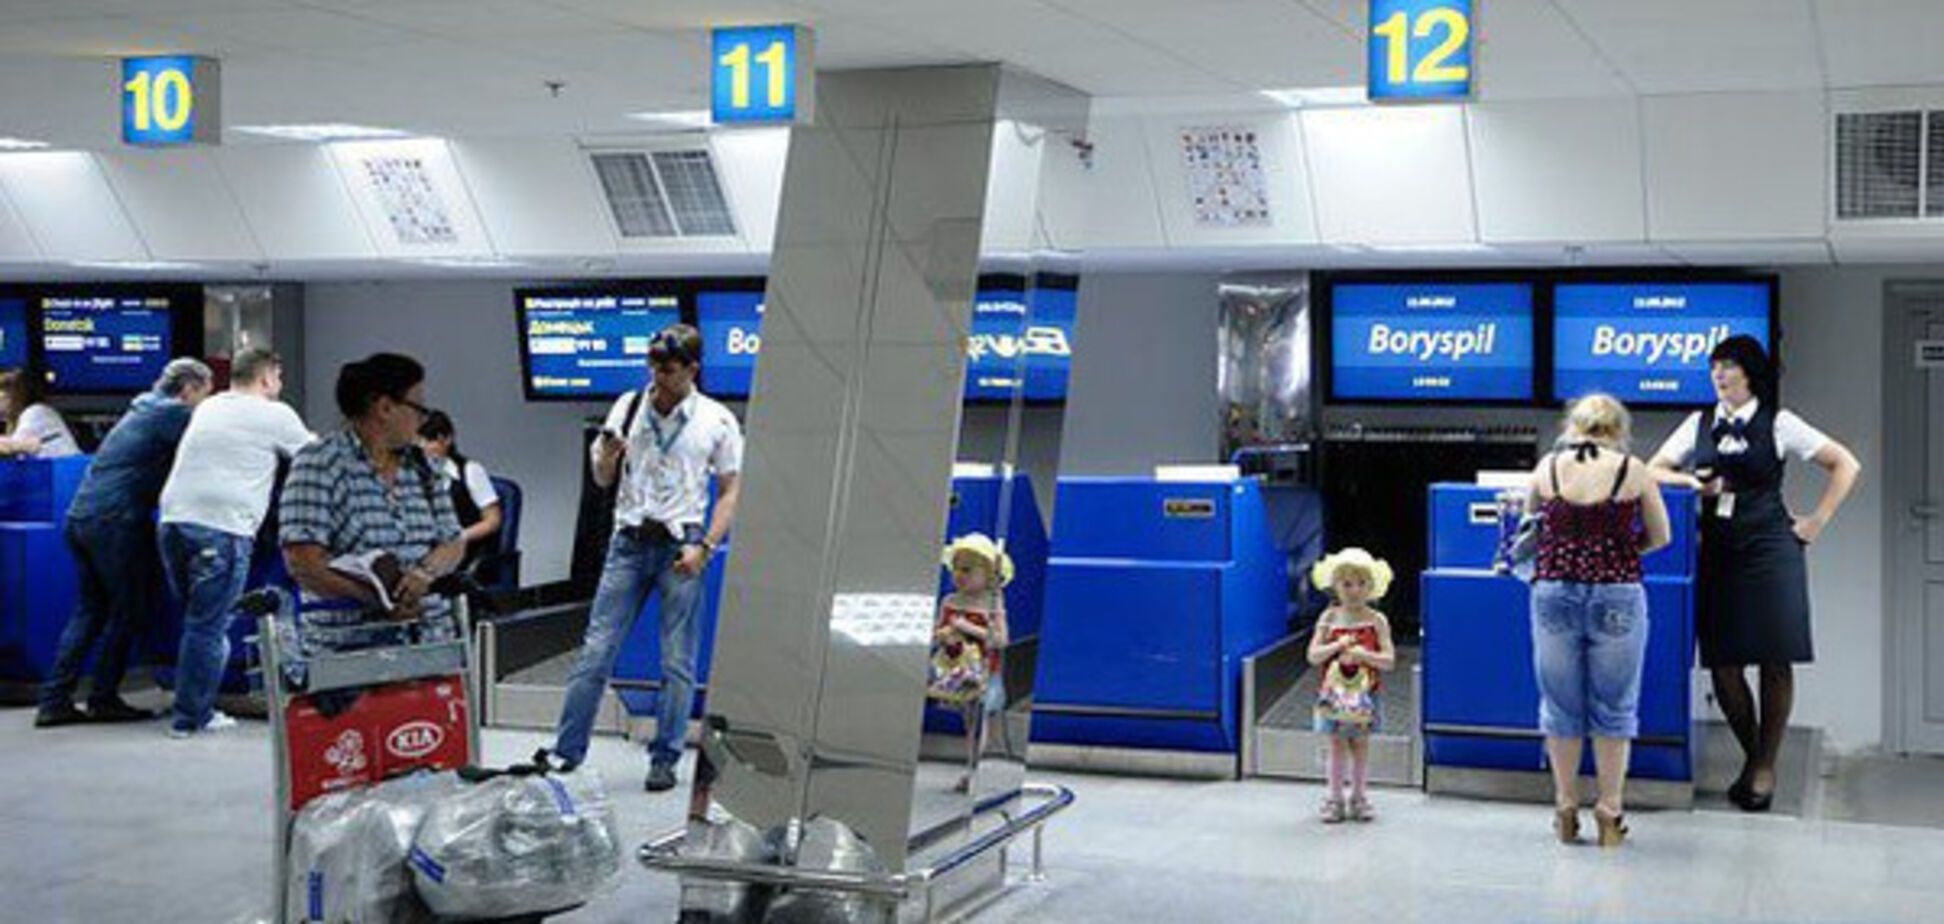 Приход Ryanair: в 'Борисполе' возможны увольнения и снижение уровня безопасности – СМИ